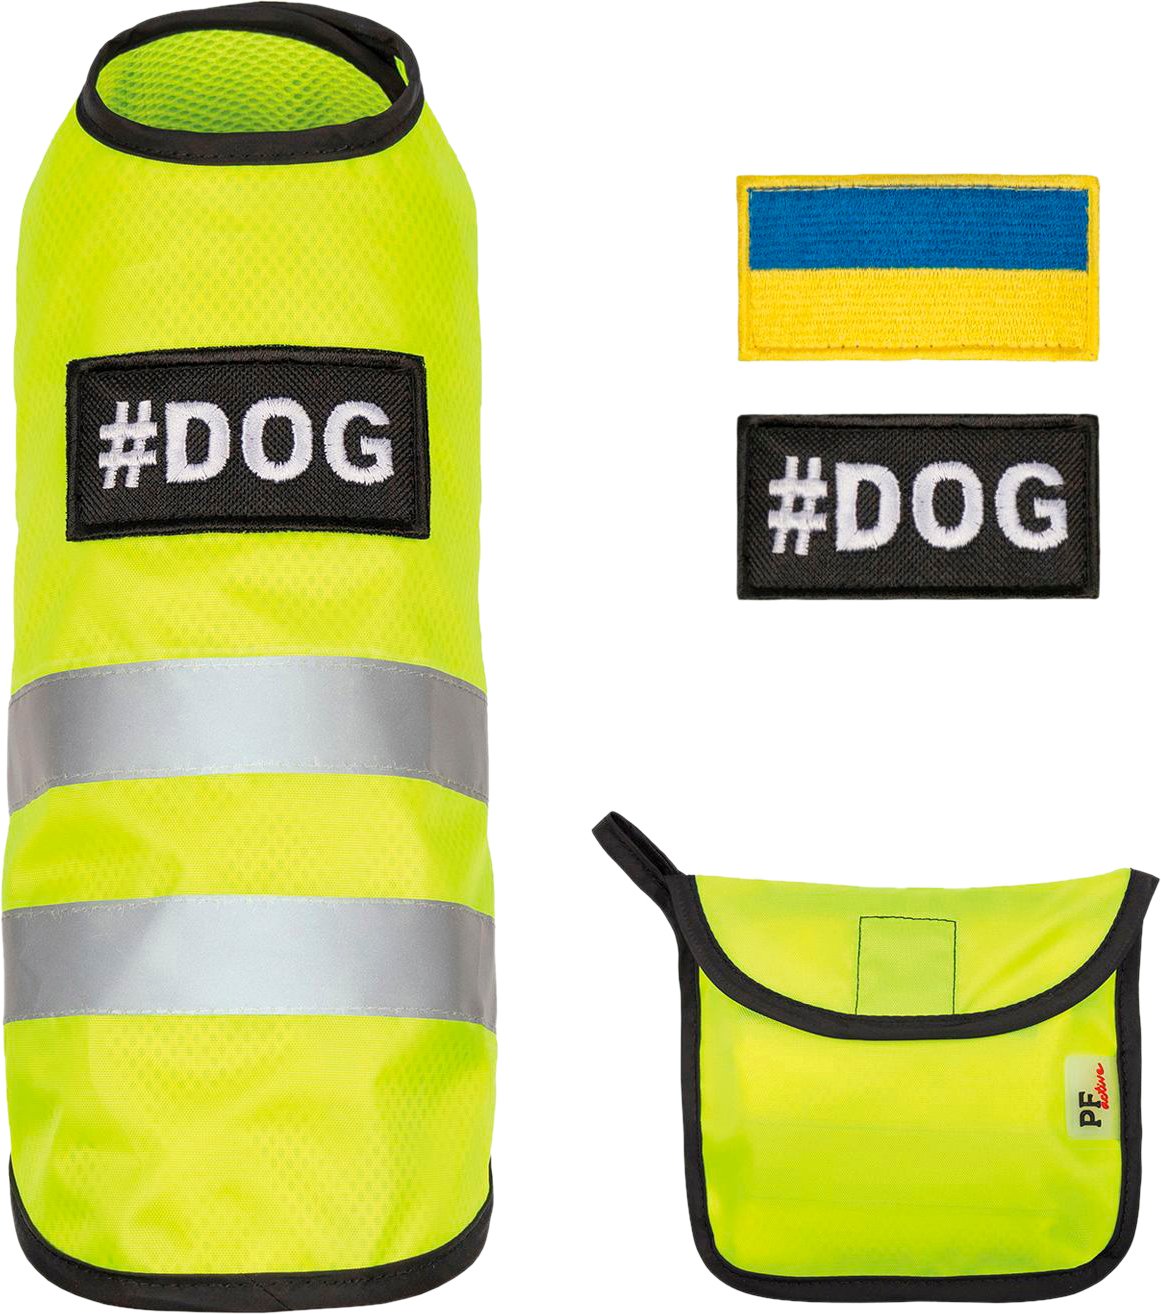 Жилет+фліс для собак Pet Fashion Warm Yellow Vest розмір L жовтийфото3